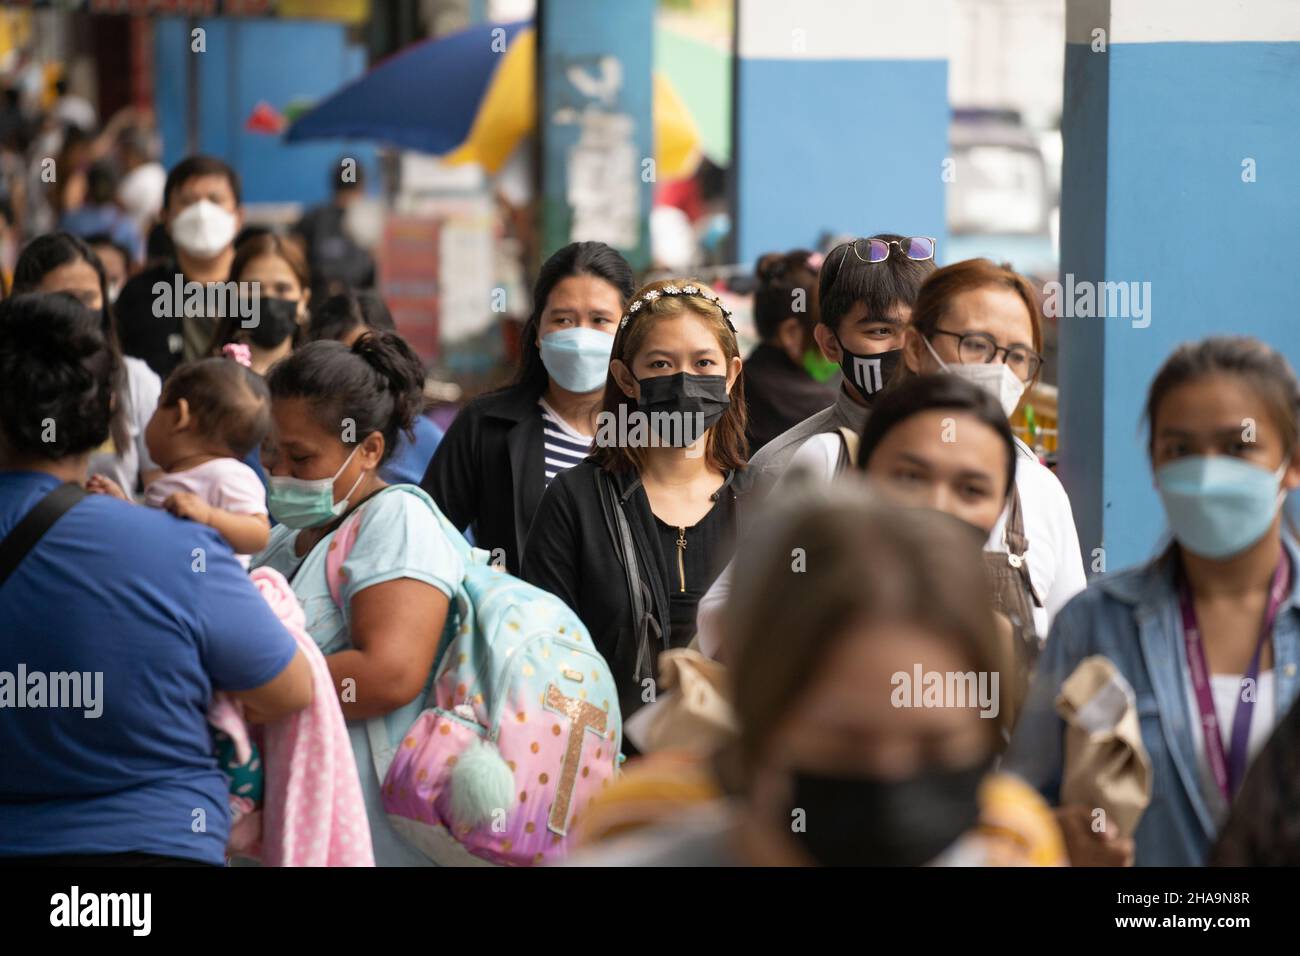 La gente nelle Filippine che cammina lungo una strada che indossa le maschere facciali, l'uso di maschere facciali nei luoghi pubblici e negli stabilimenti è obbligatorio. Foto Stock